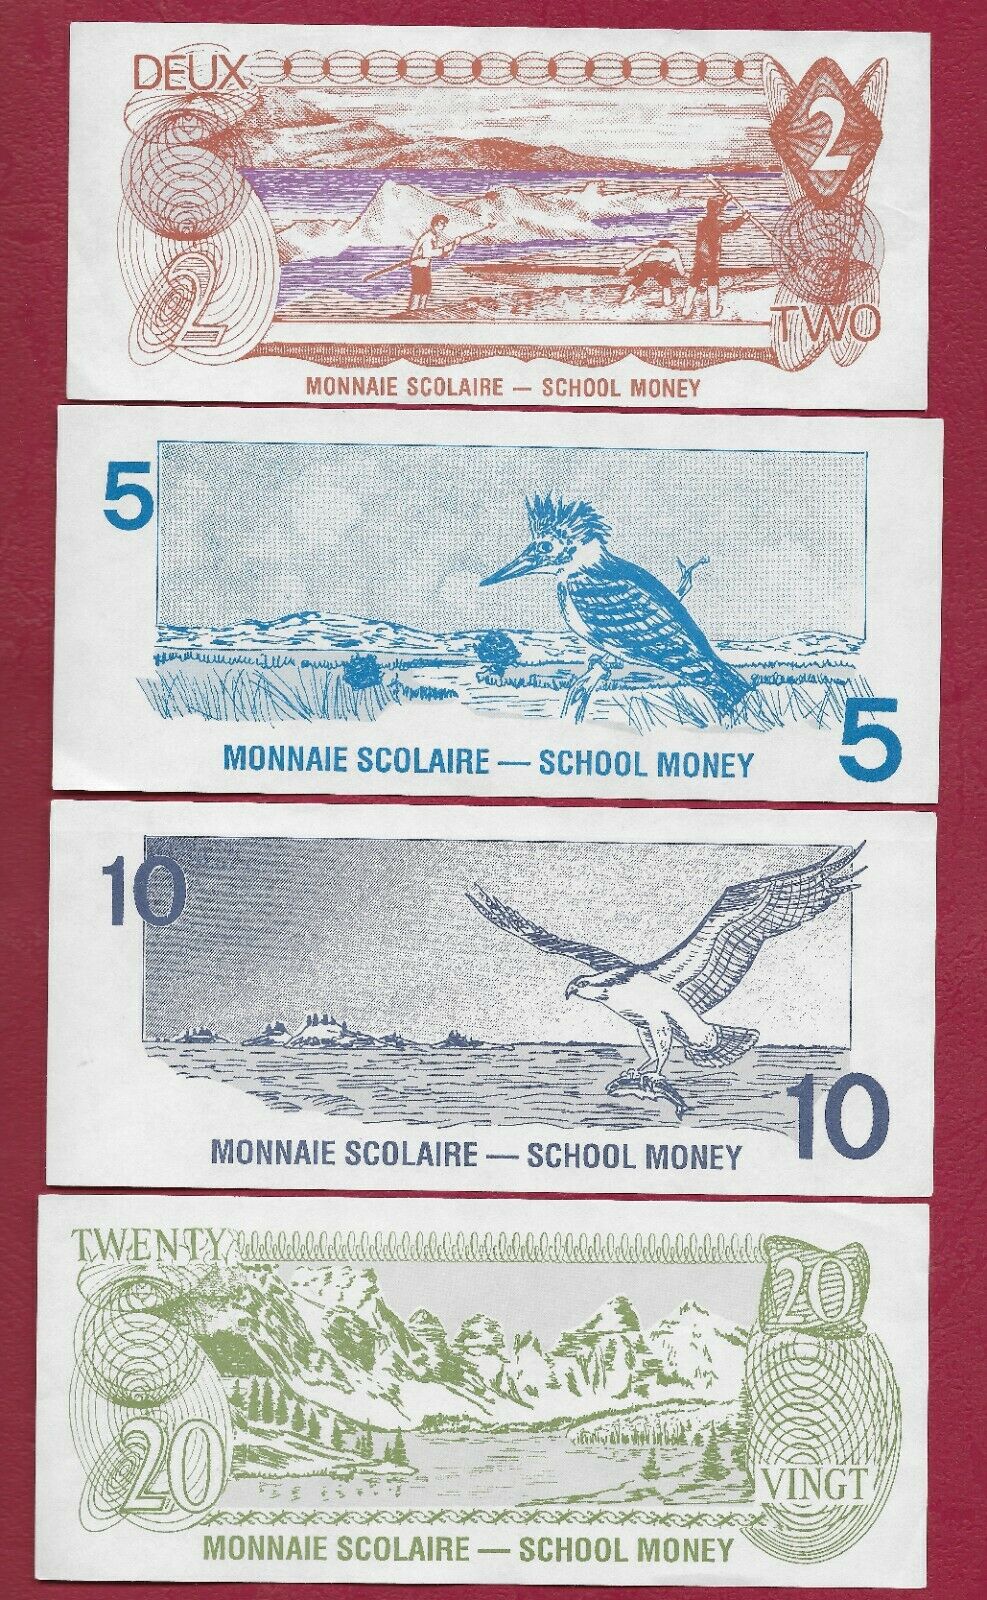 School Money - Monnaie Scolaire